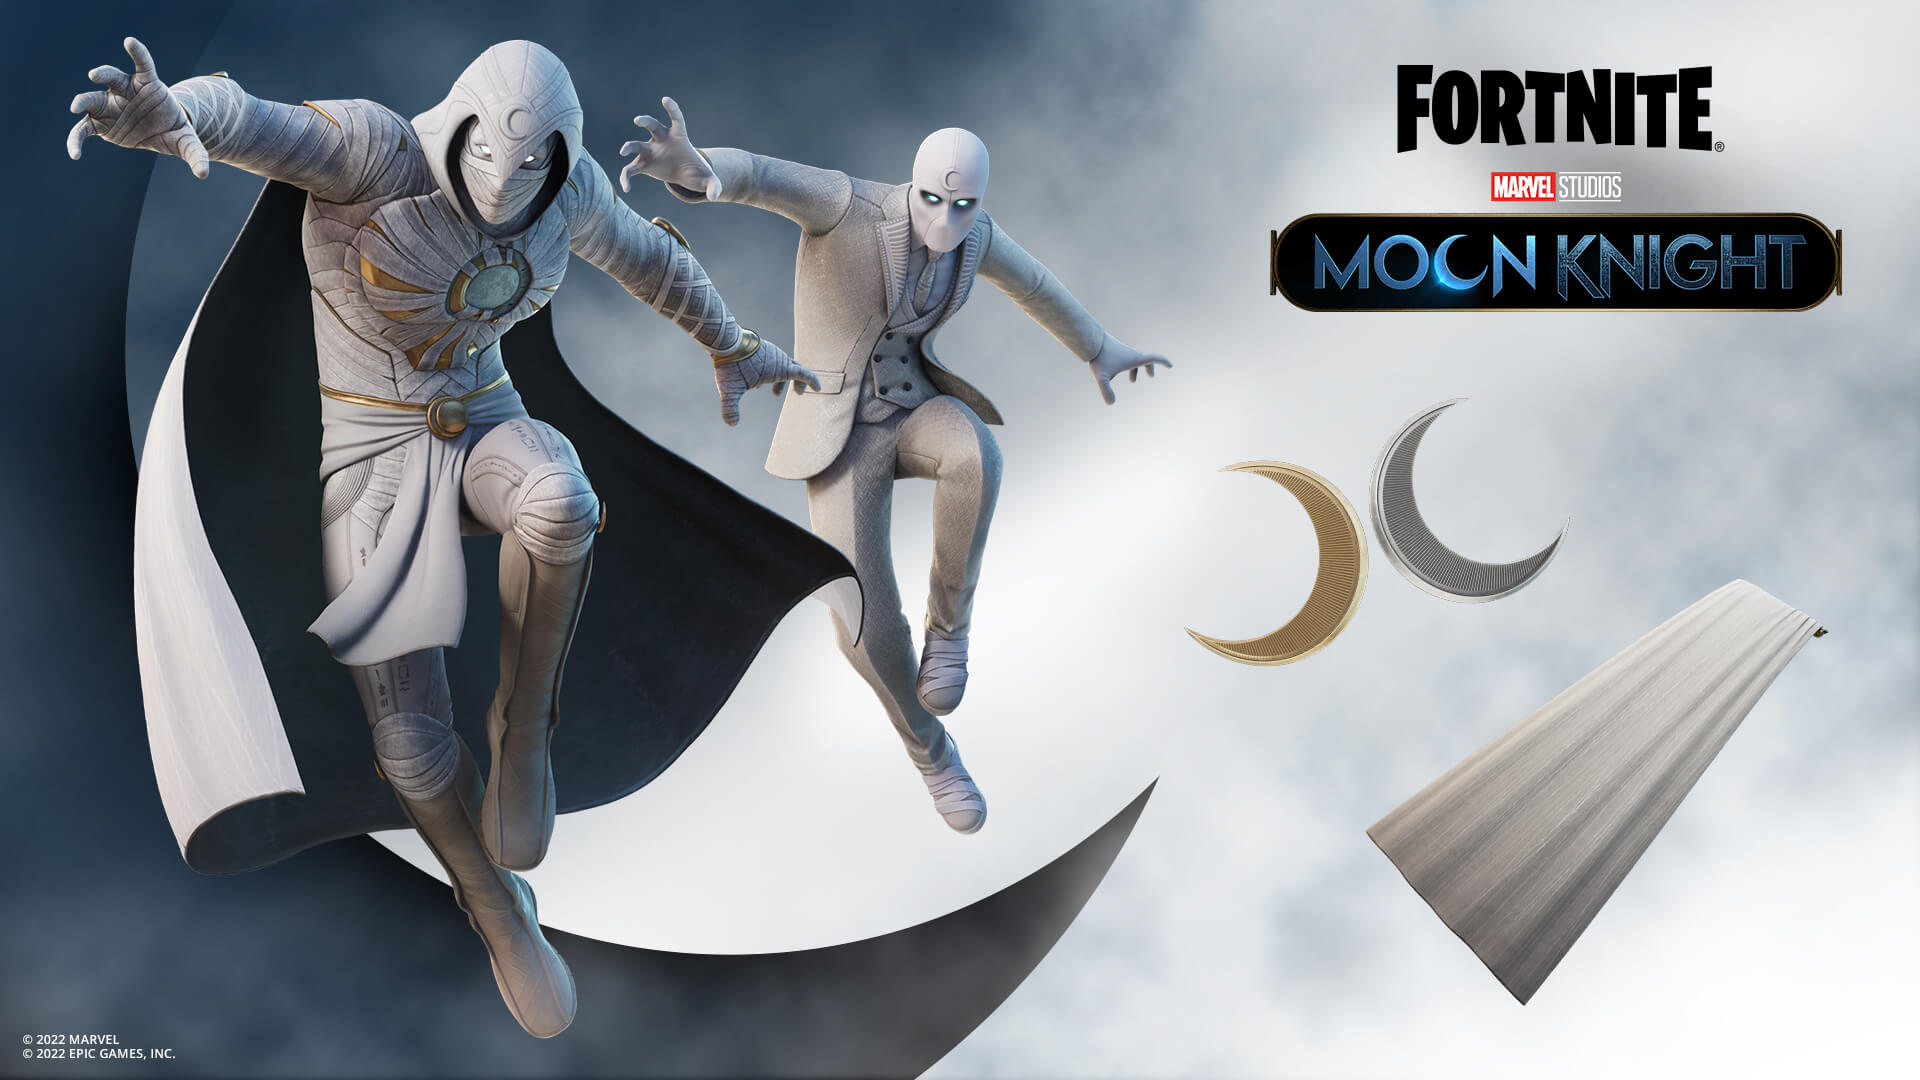 Imagem para Moon Knight já está disponível no Fortnite